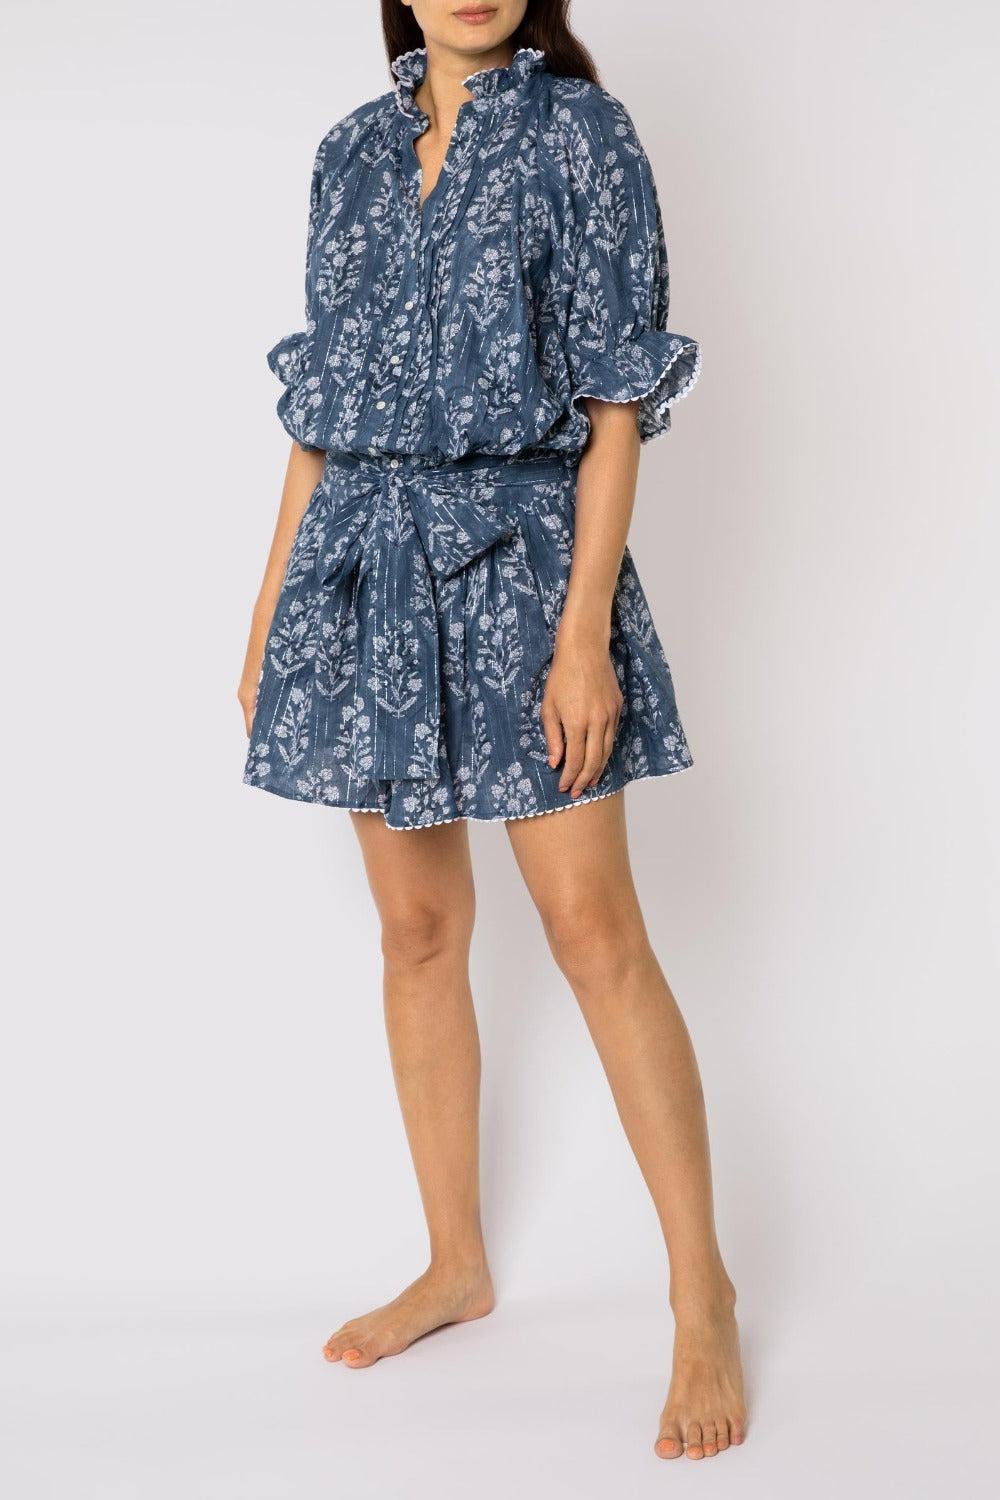 Juliet Dunn Small Flower Block Print Blouson Dress With Lurex in Blue | Lyst